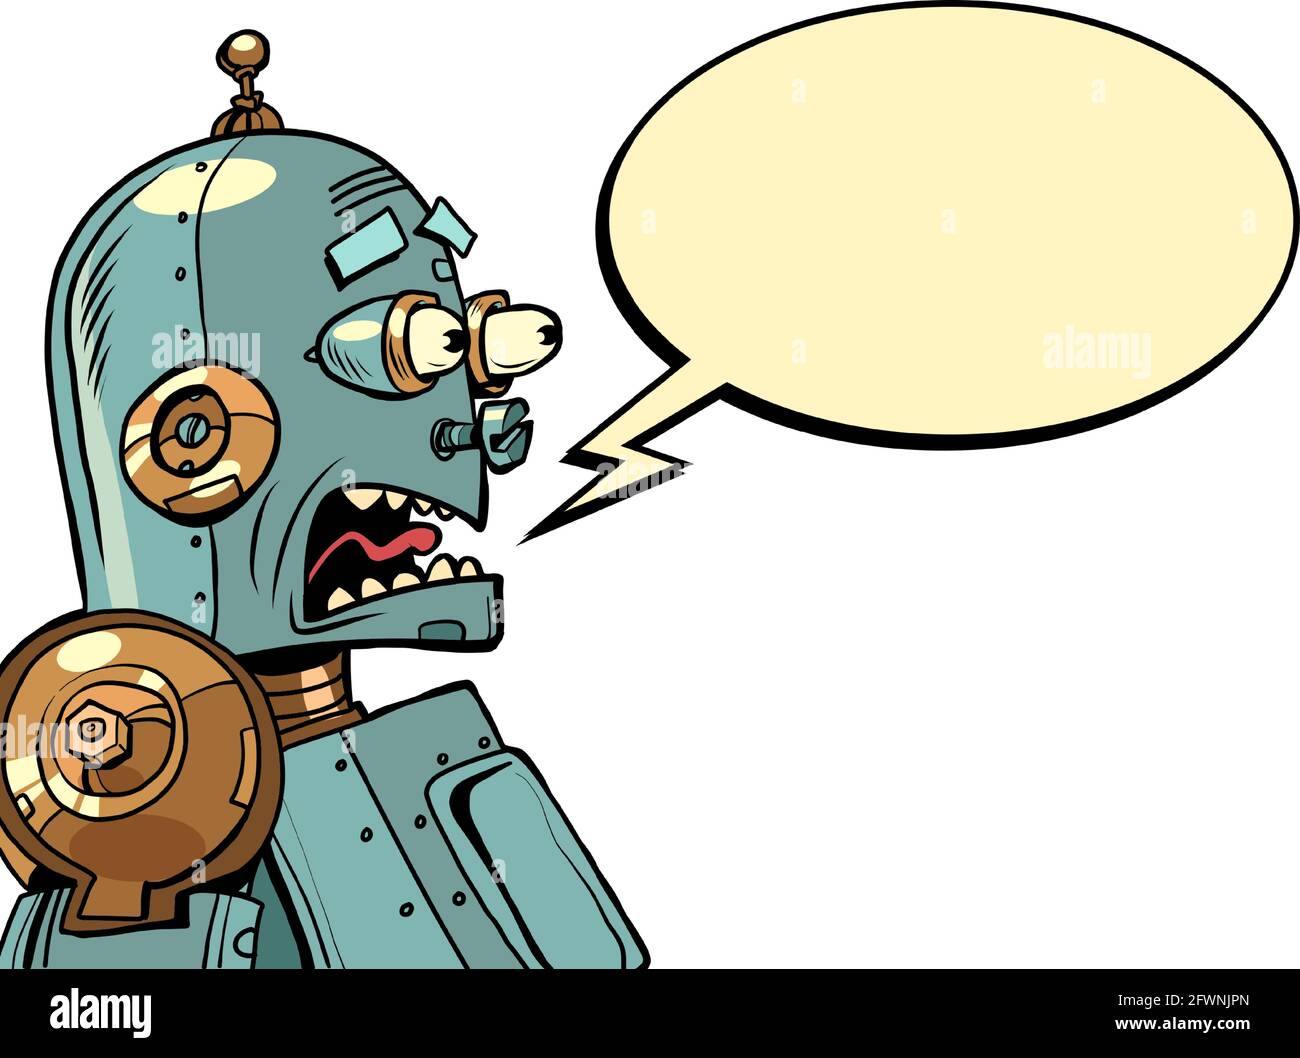 Der Retro-Roboter schreit vor Angst. Emotionen künstliche Intelligenz Stock Vektor